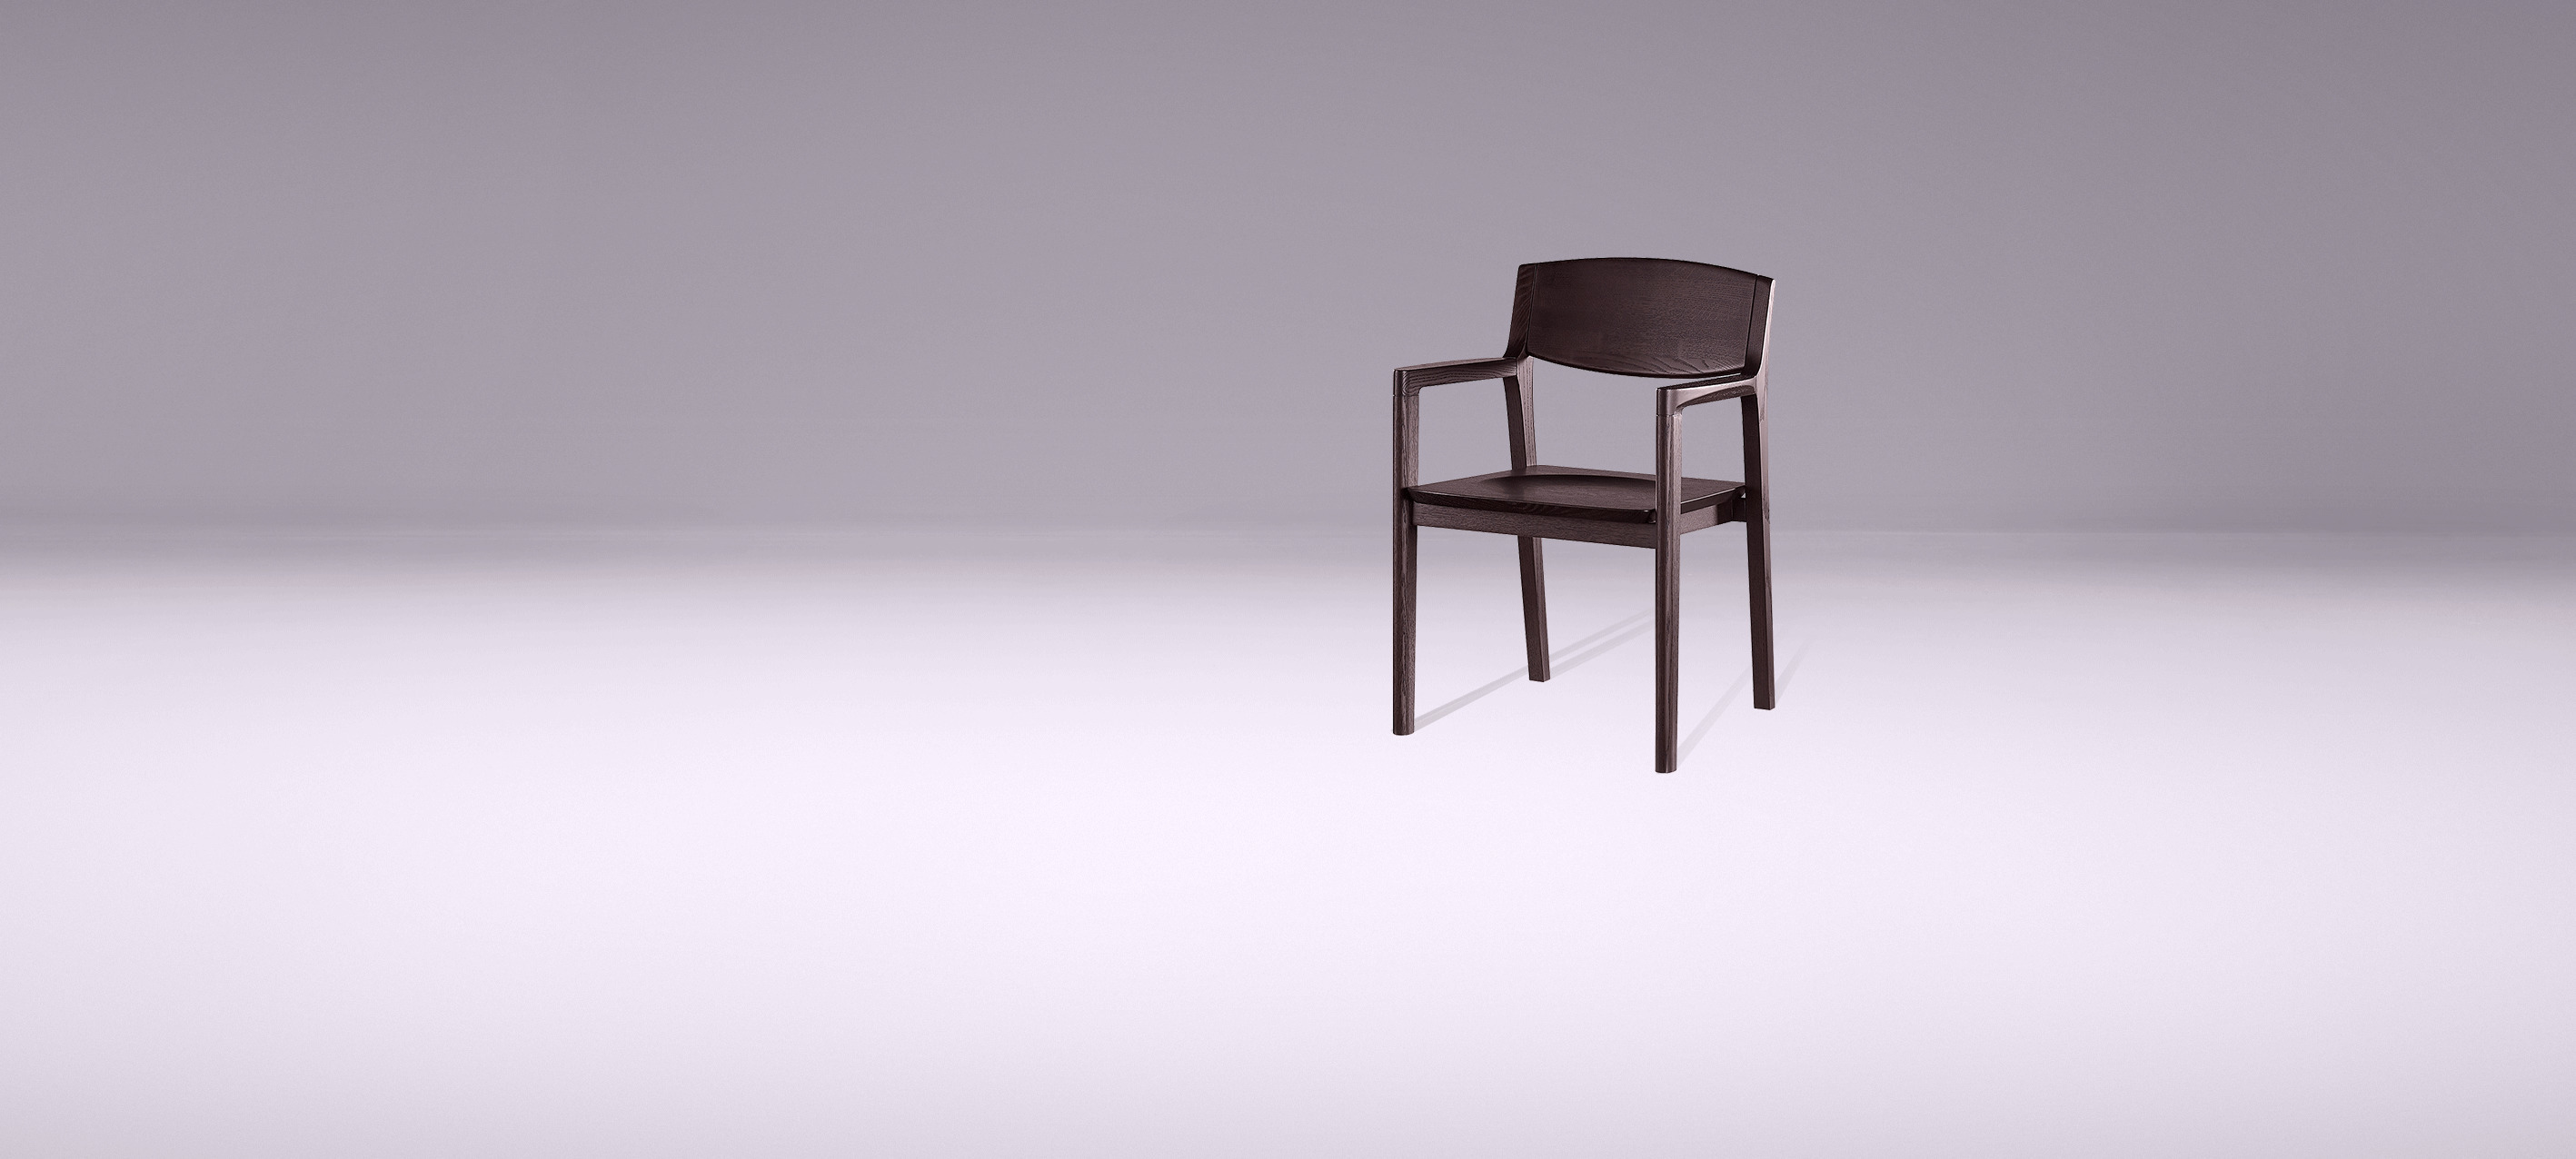 展示一把椅子GIF图片:椅子